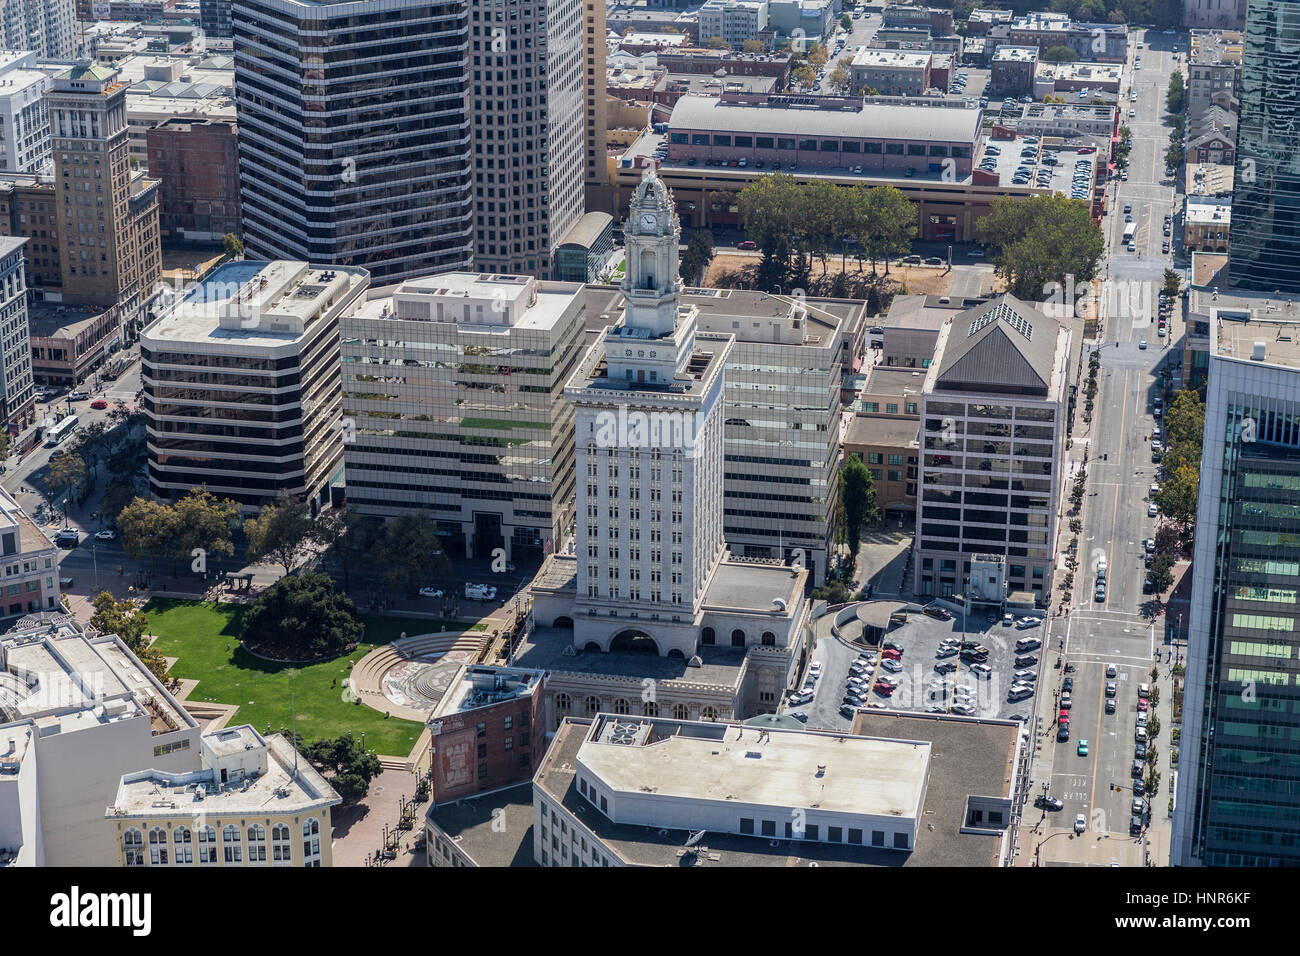 Oakland, Californie, USA - 19 septembre 2016 : Vue aérienne de l'Hôtel de Ville d'Oakland et le centre-ville de l'architecture. Banque D'Images